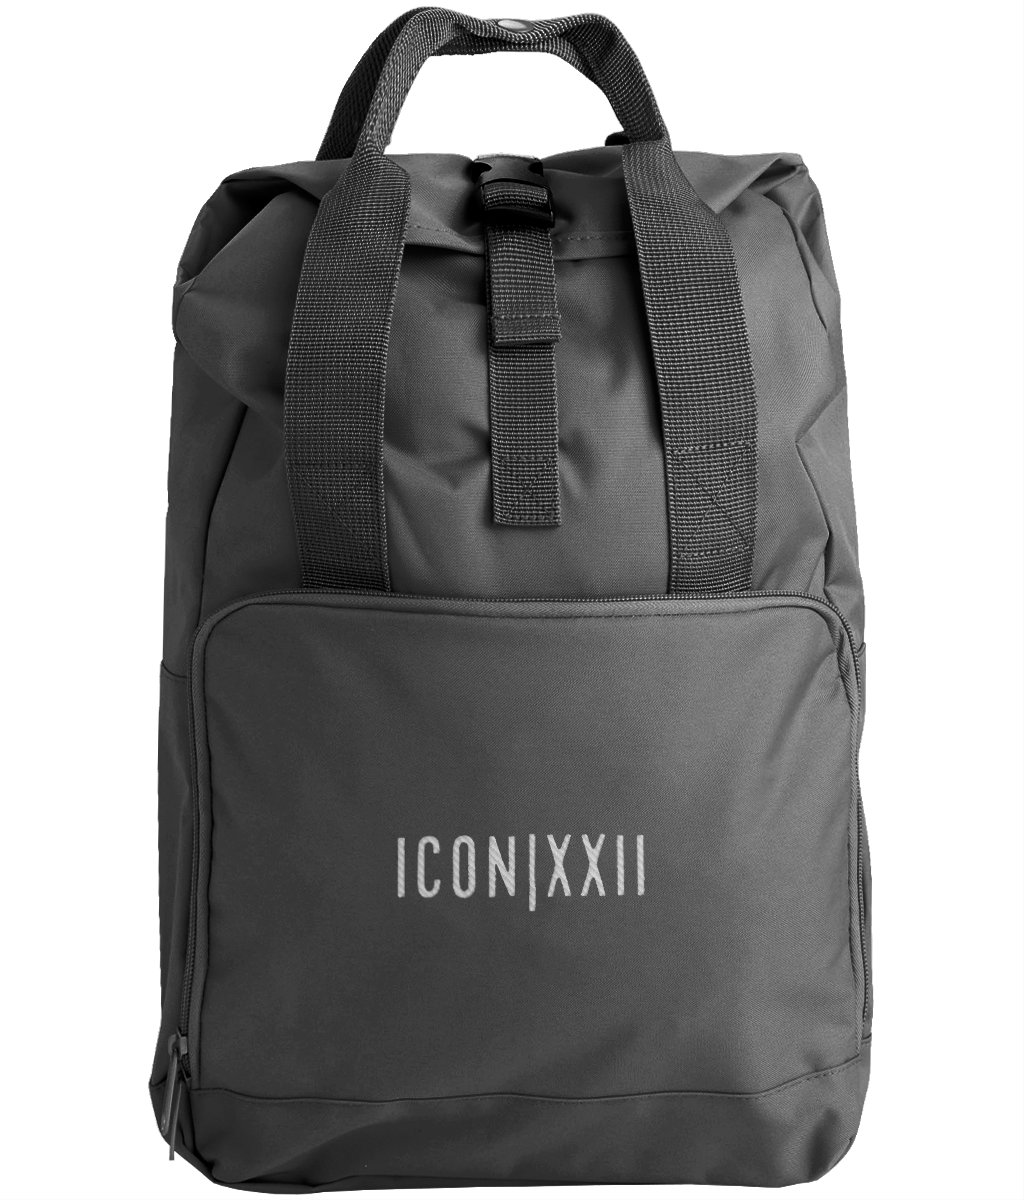 ICON|XXII Backpack - ICON|XXII